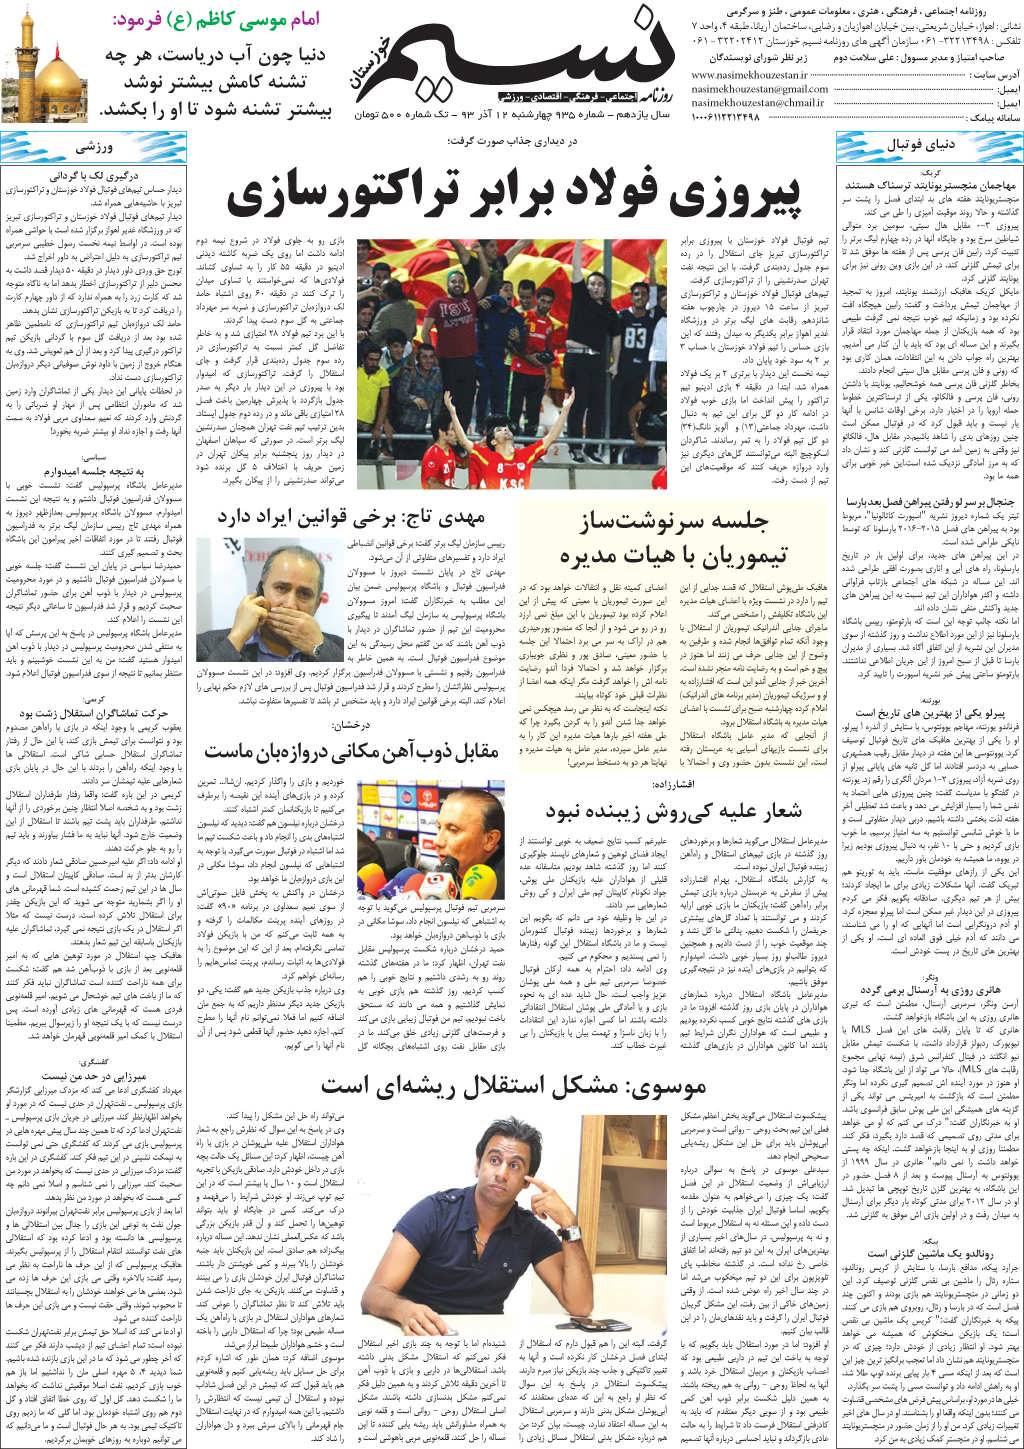 صفحه آخر روزنامه نسیم شماره 935